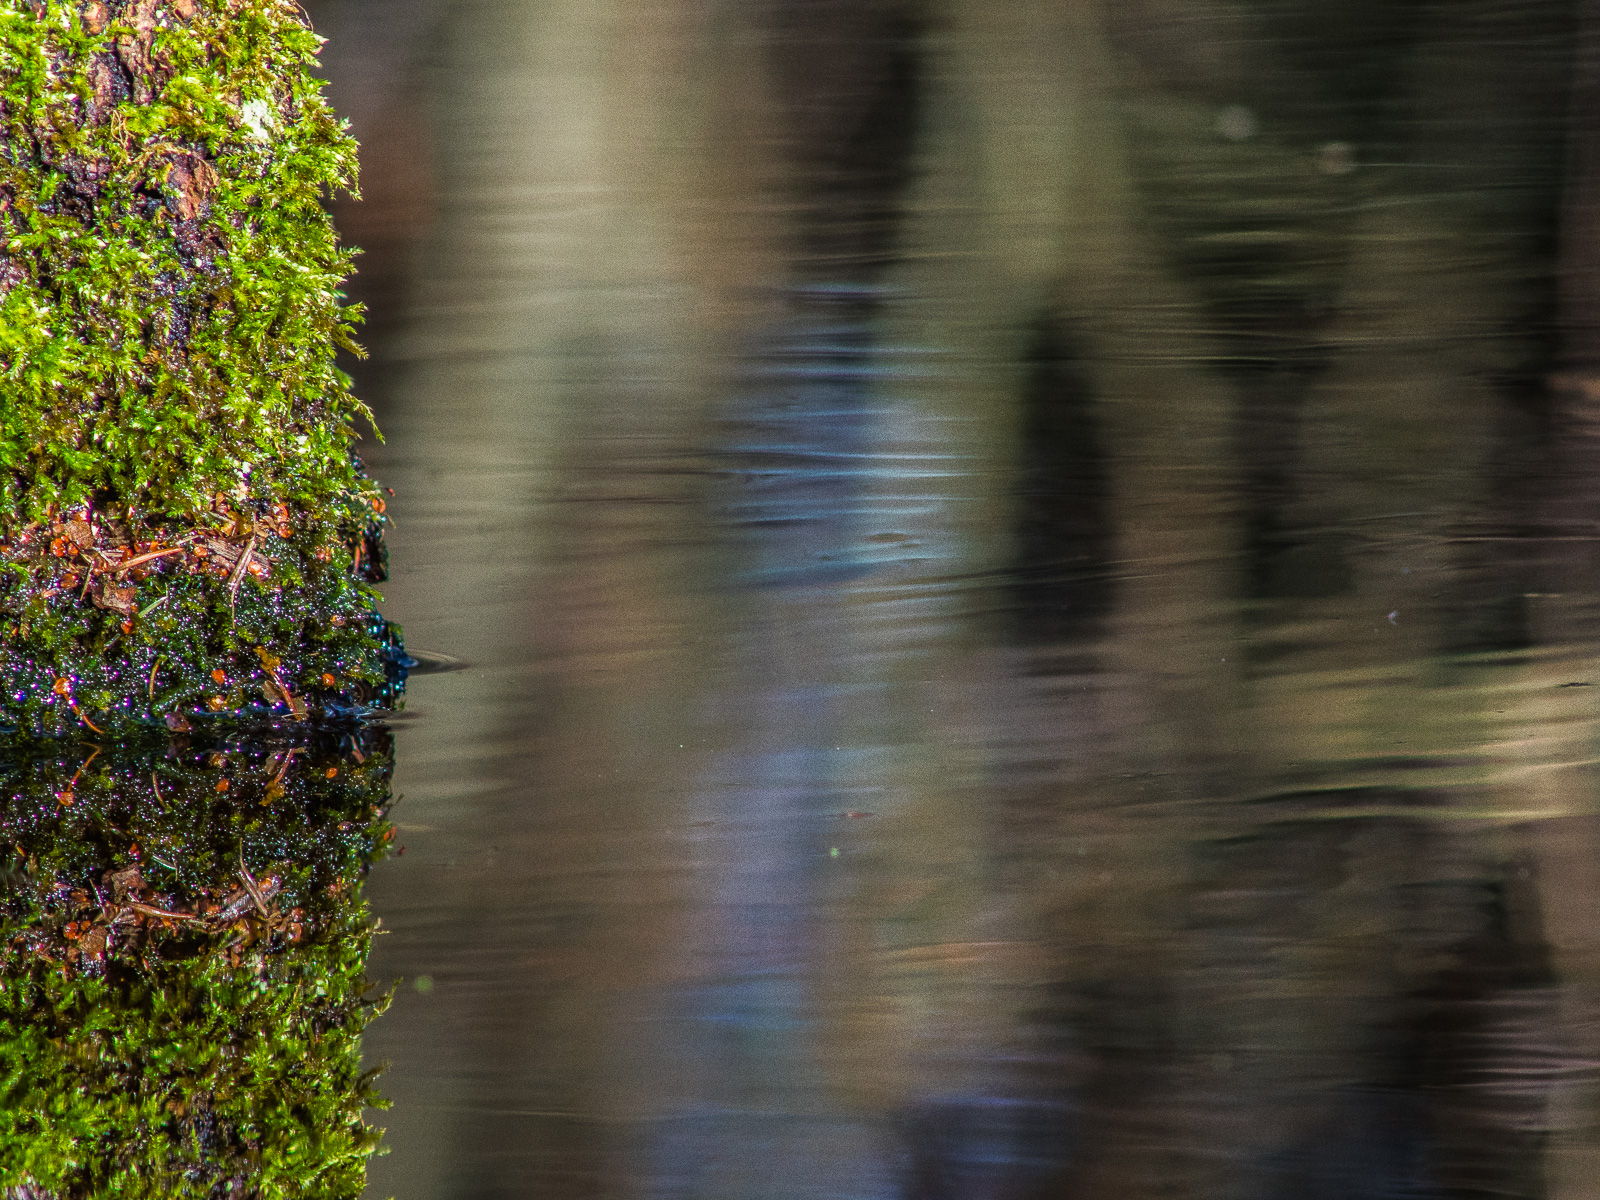 Eine Wasseroberfläche spiegelt, von kleinen Wellen durchsetzt, braun-grau die umgebende Waldlandschaft. Von links ragt ein undefinierter Klotz ins Bild, der stark mit hellgrünem Moos überzogen ist.